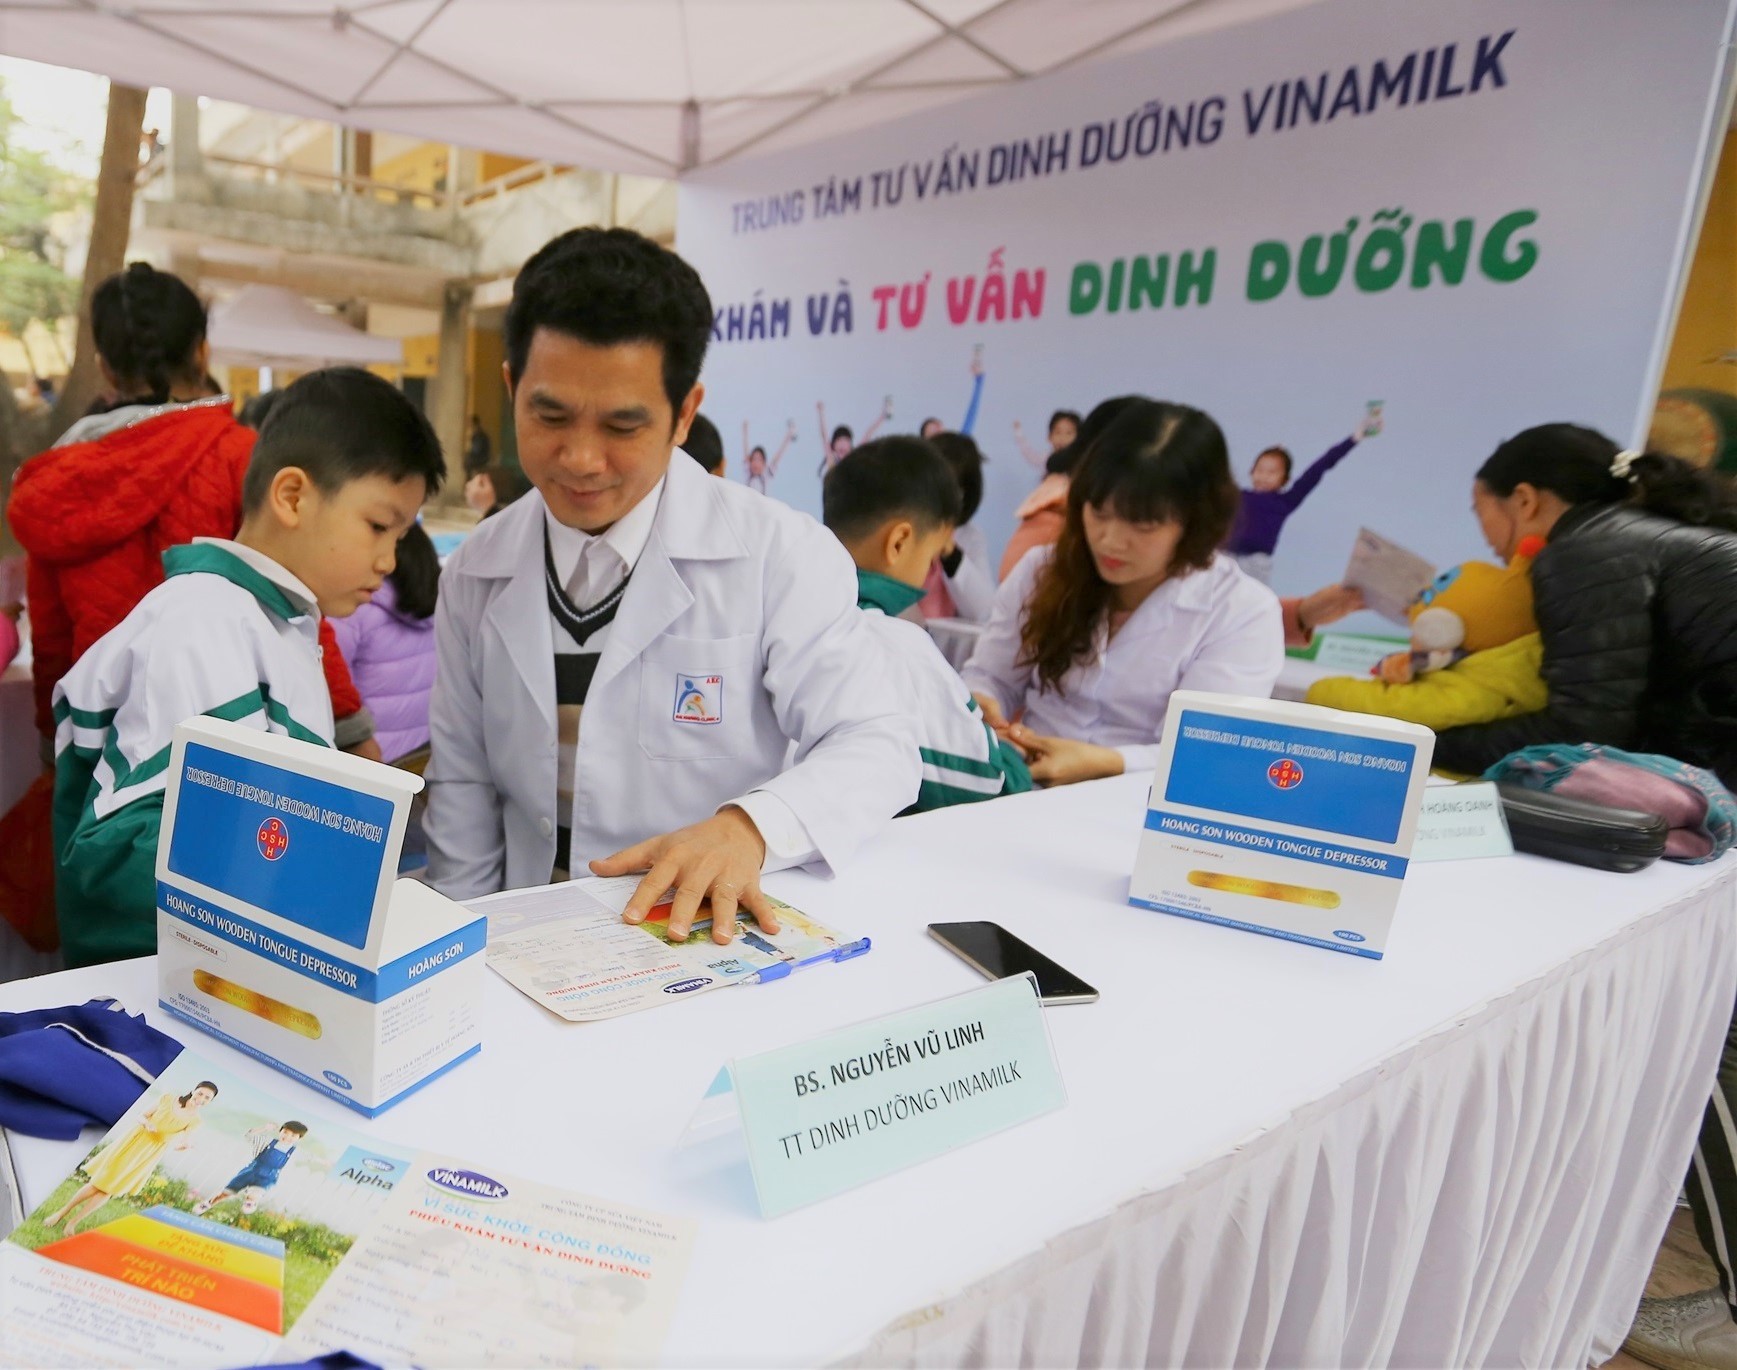 Bác sĩ dinh dưỡng của công ty Vinamilk khám sức khỏe và tư vấn dinh dưỡng cho các em học sinh tại trường.